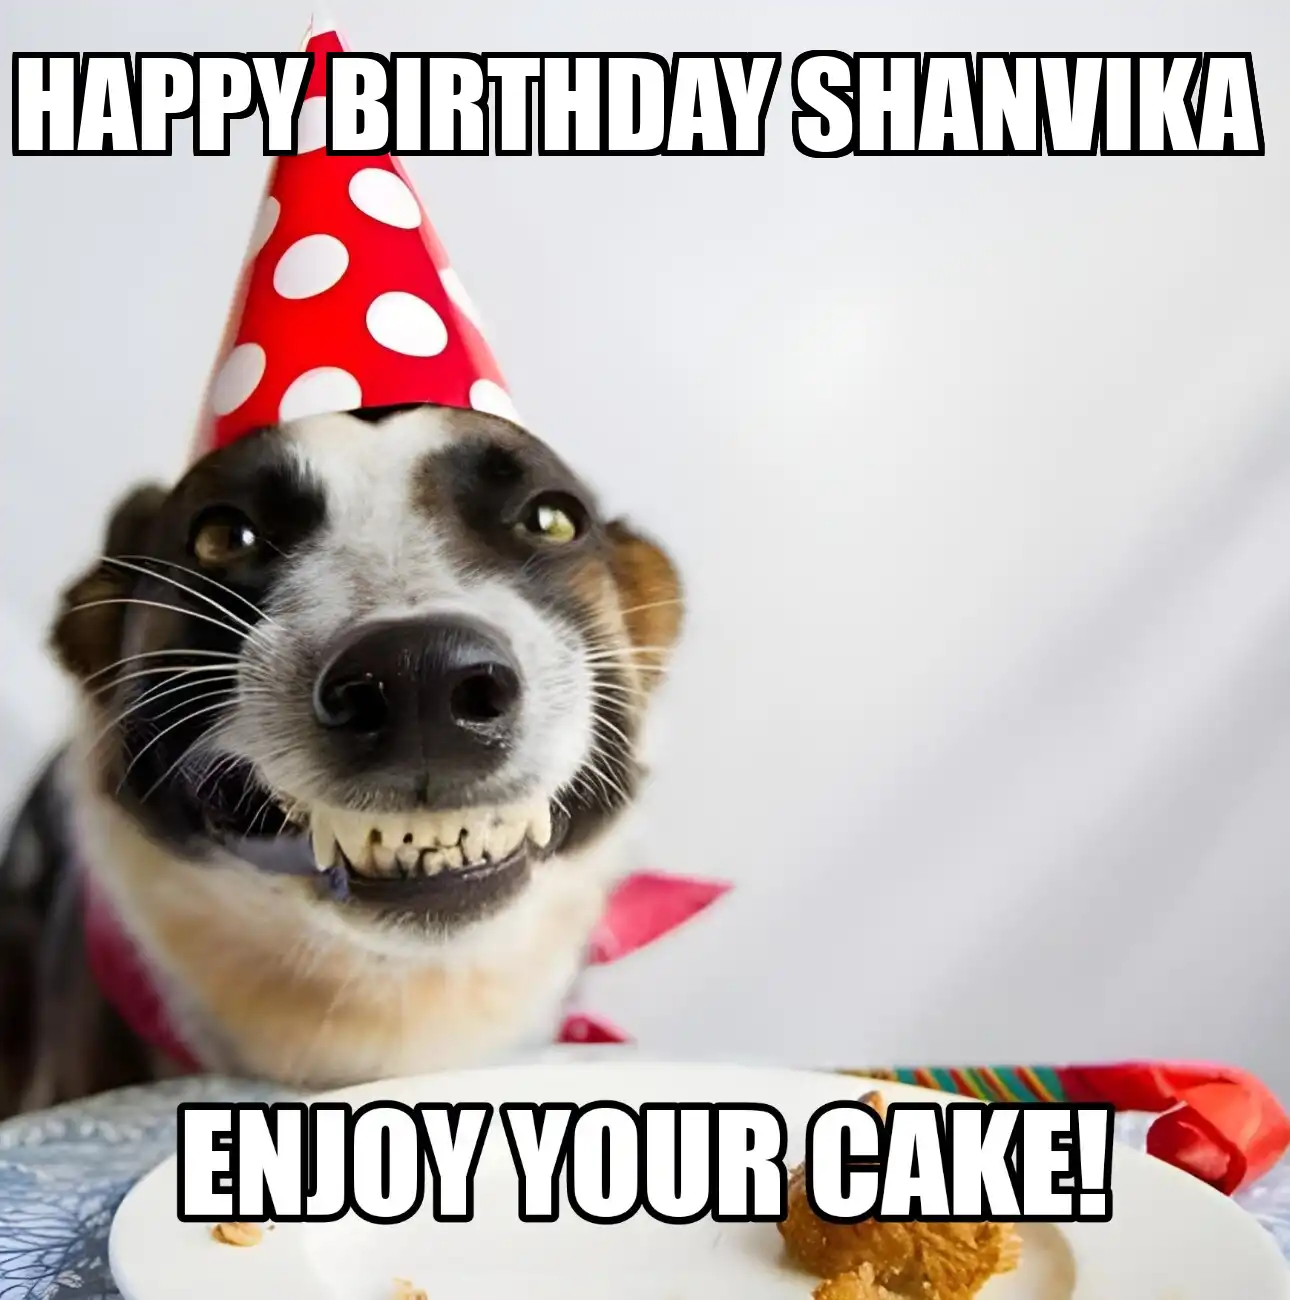 Happy Birthday Shanvika Enjoy Your Cake Dog Meme